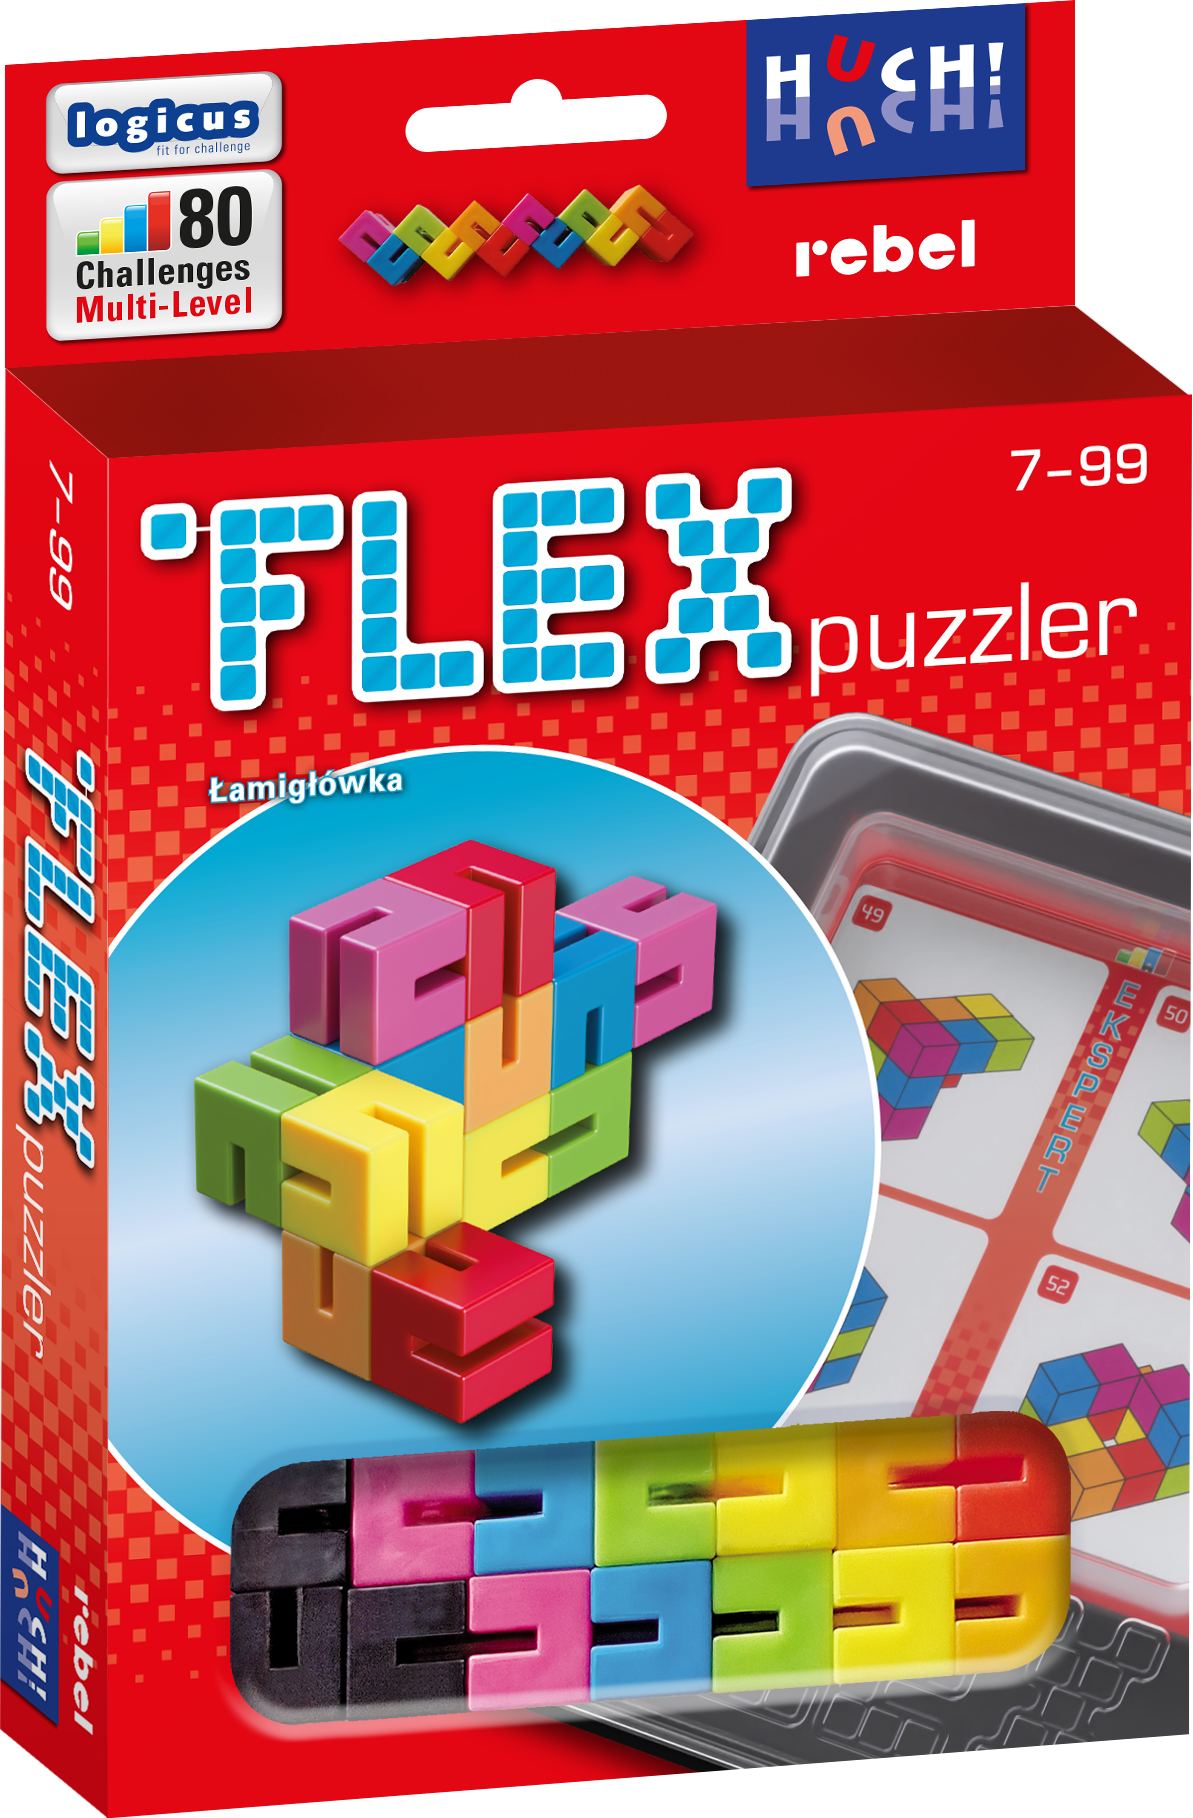 Flex Puzzler (edycja polska)